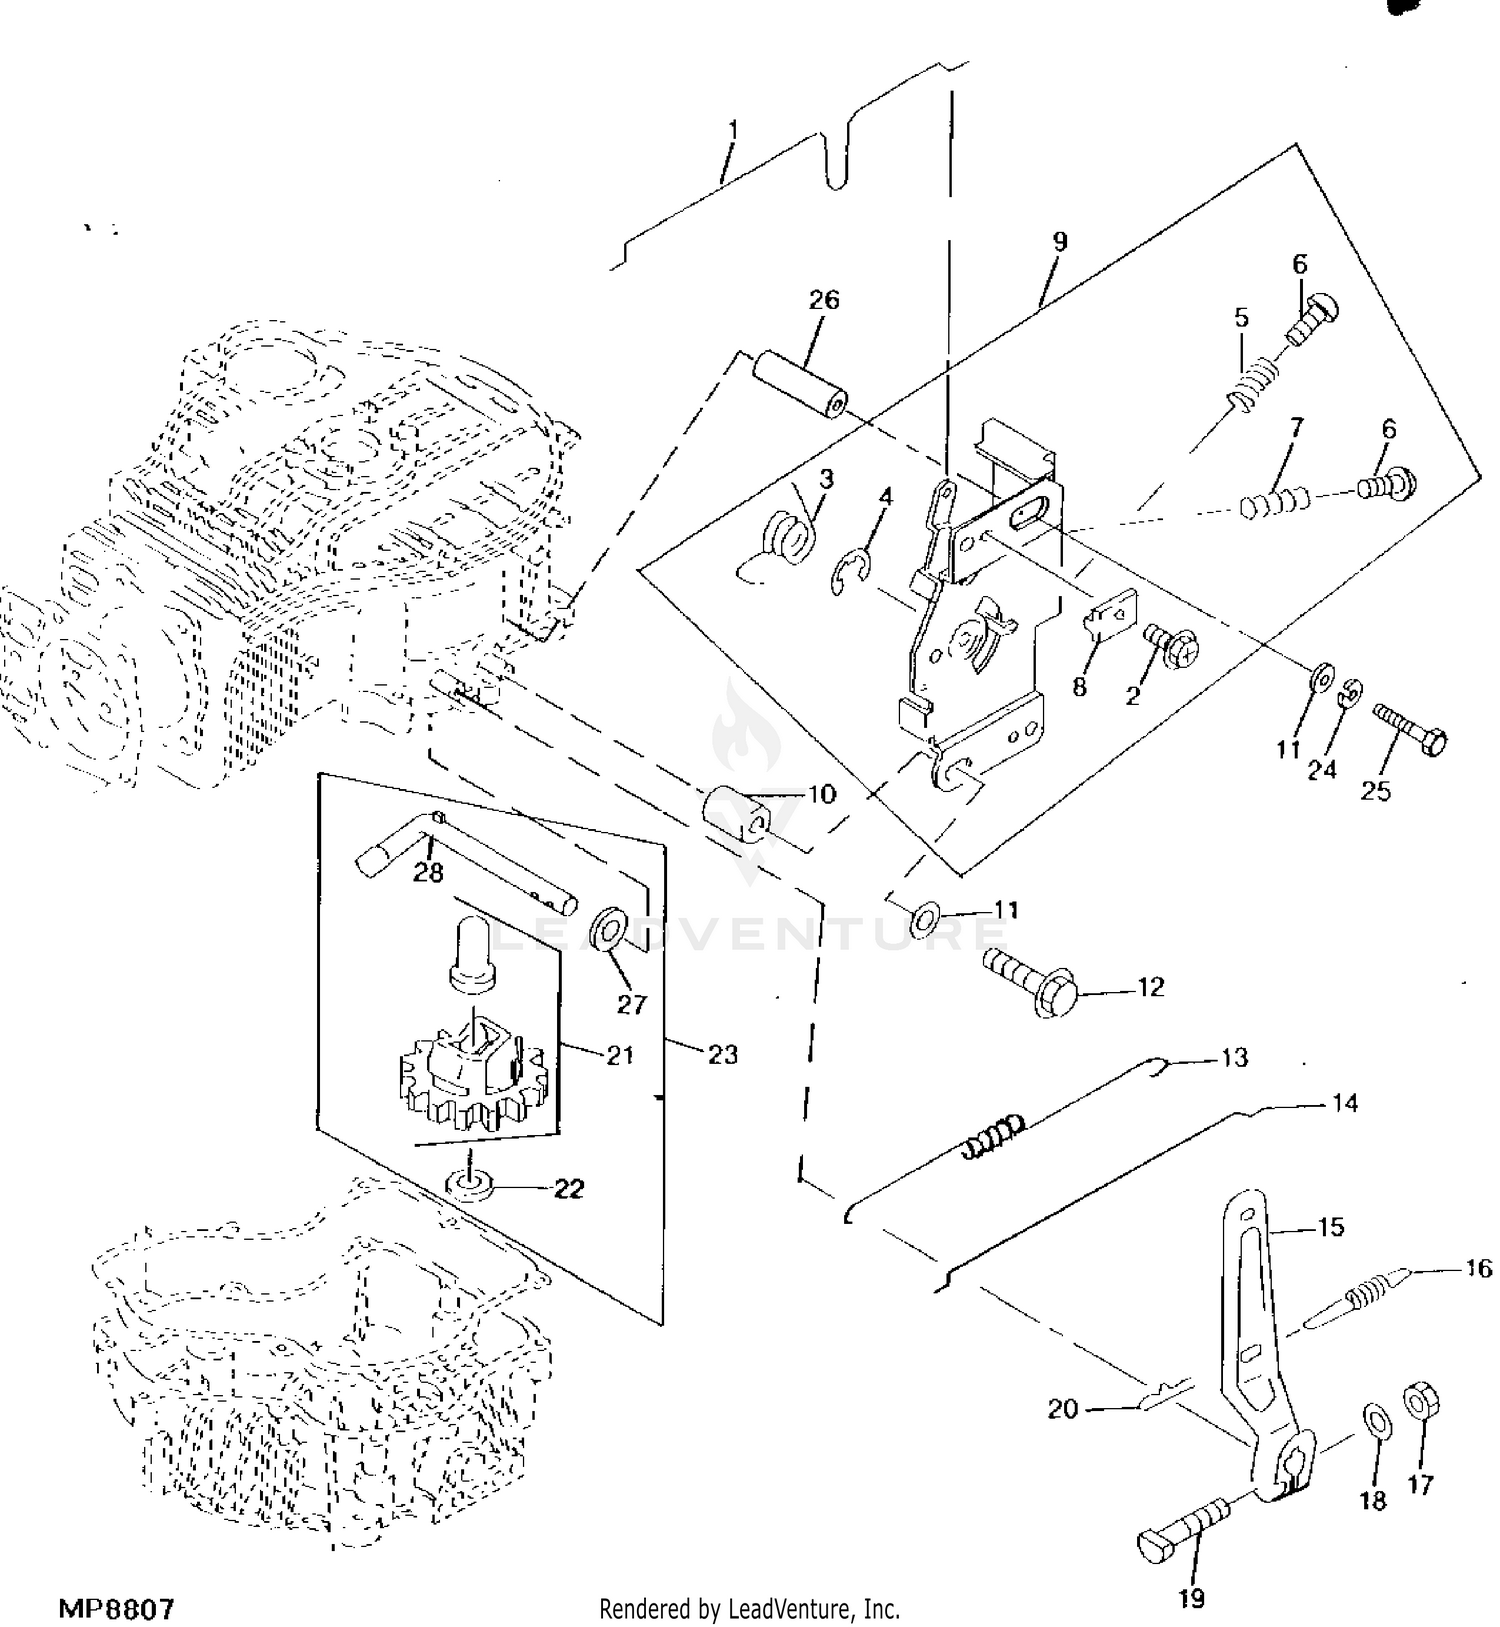 42 John Deere Lx188 Carburetor Diagram Wiring Diagrams Explained